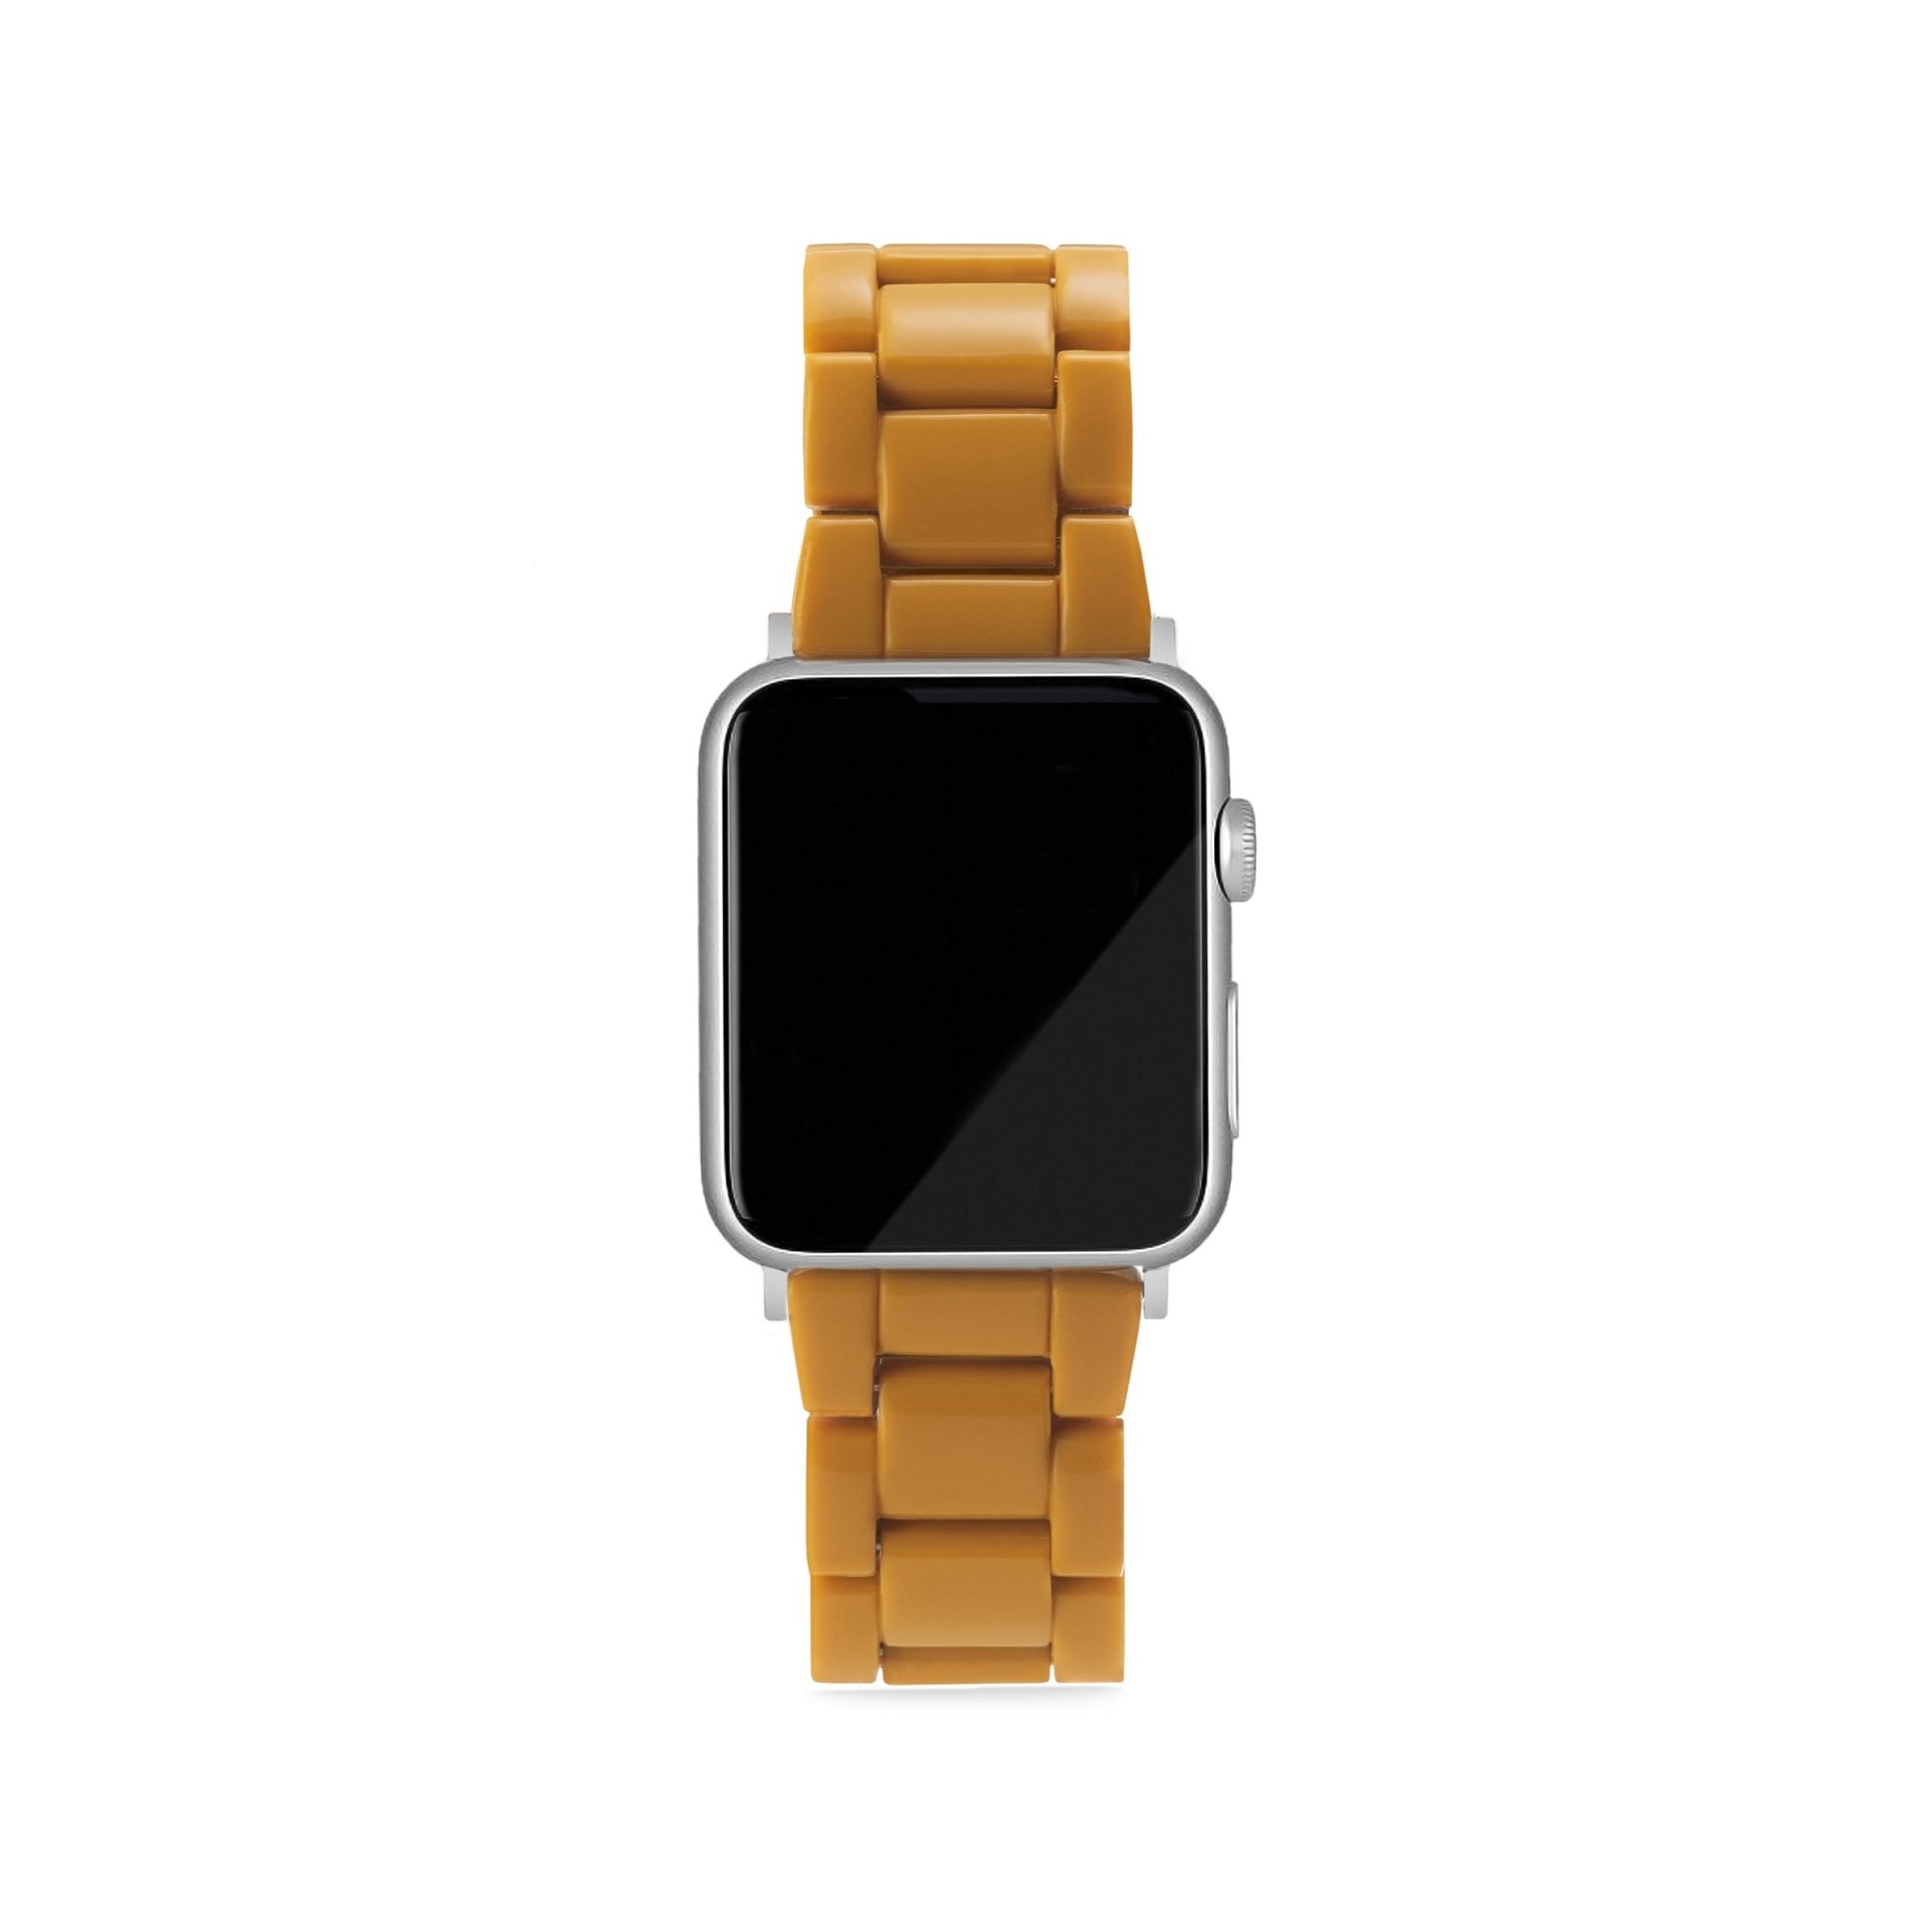 MACHETE Apple Watch Band in Ochre